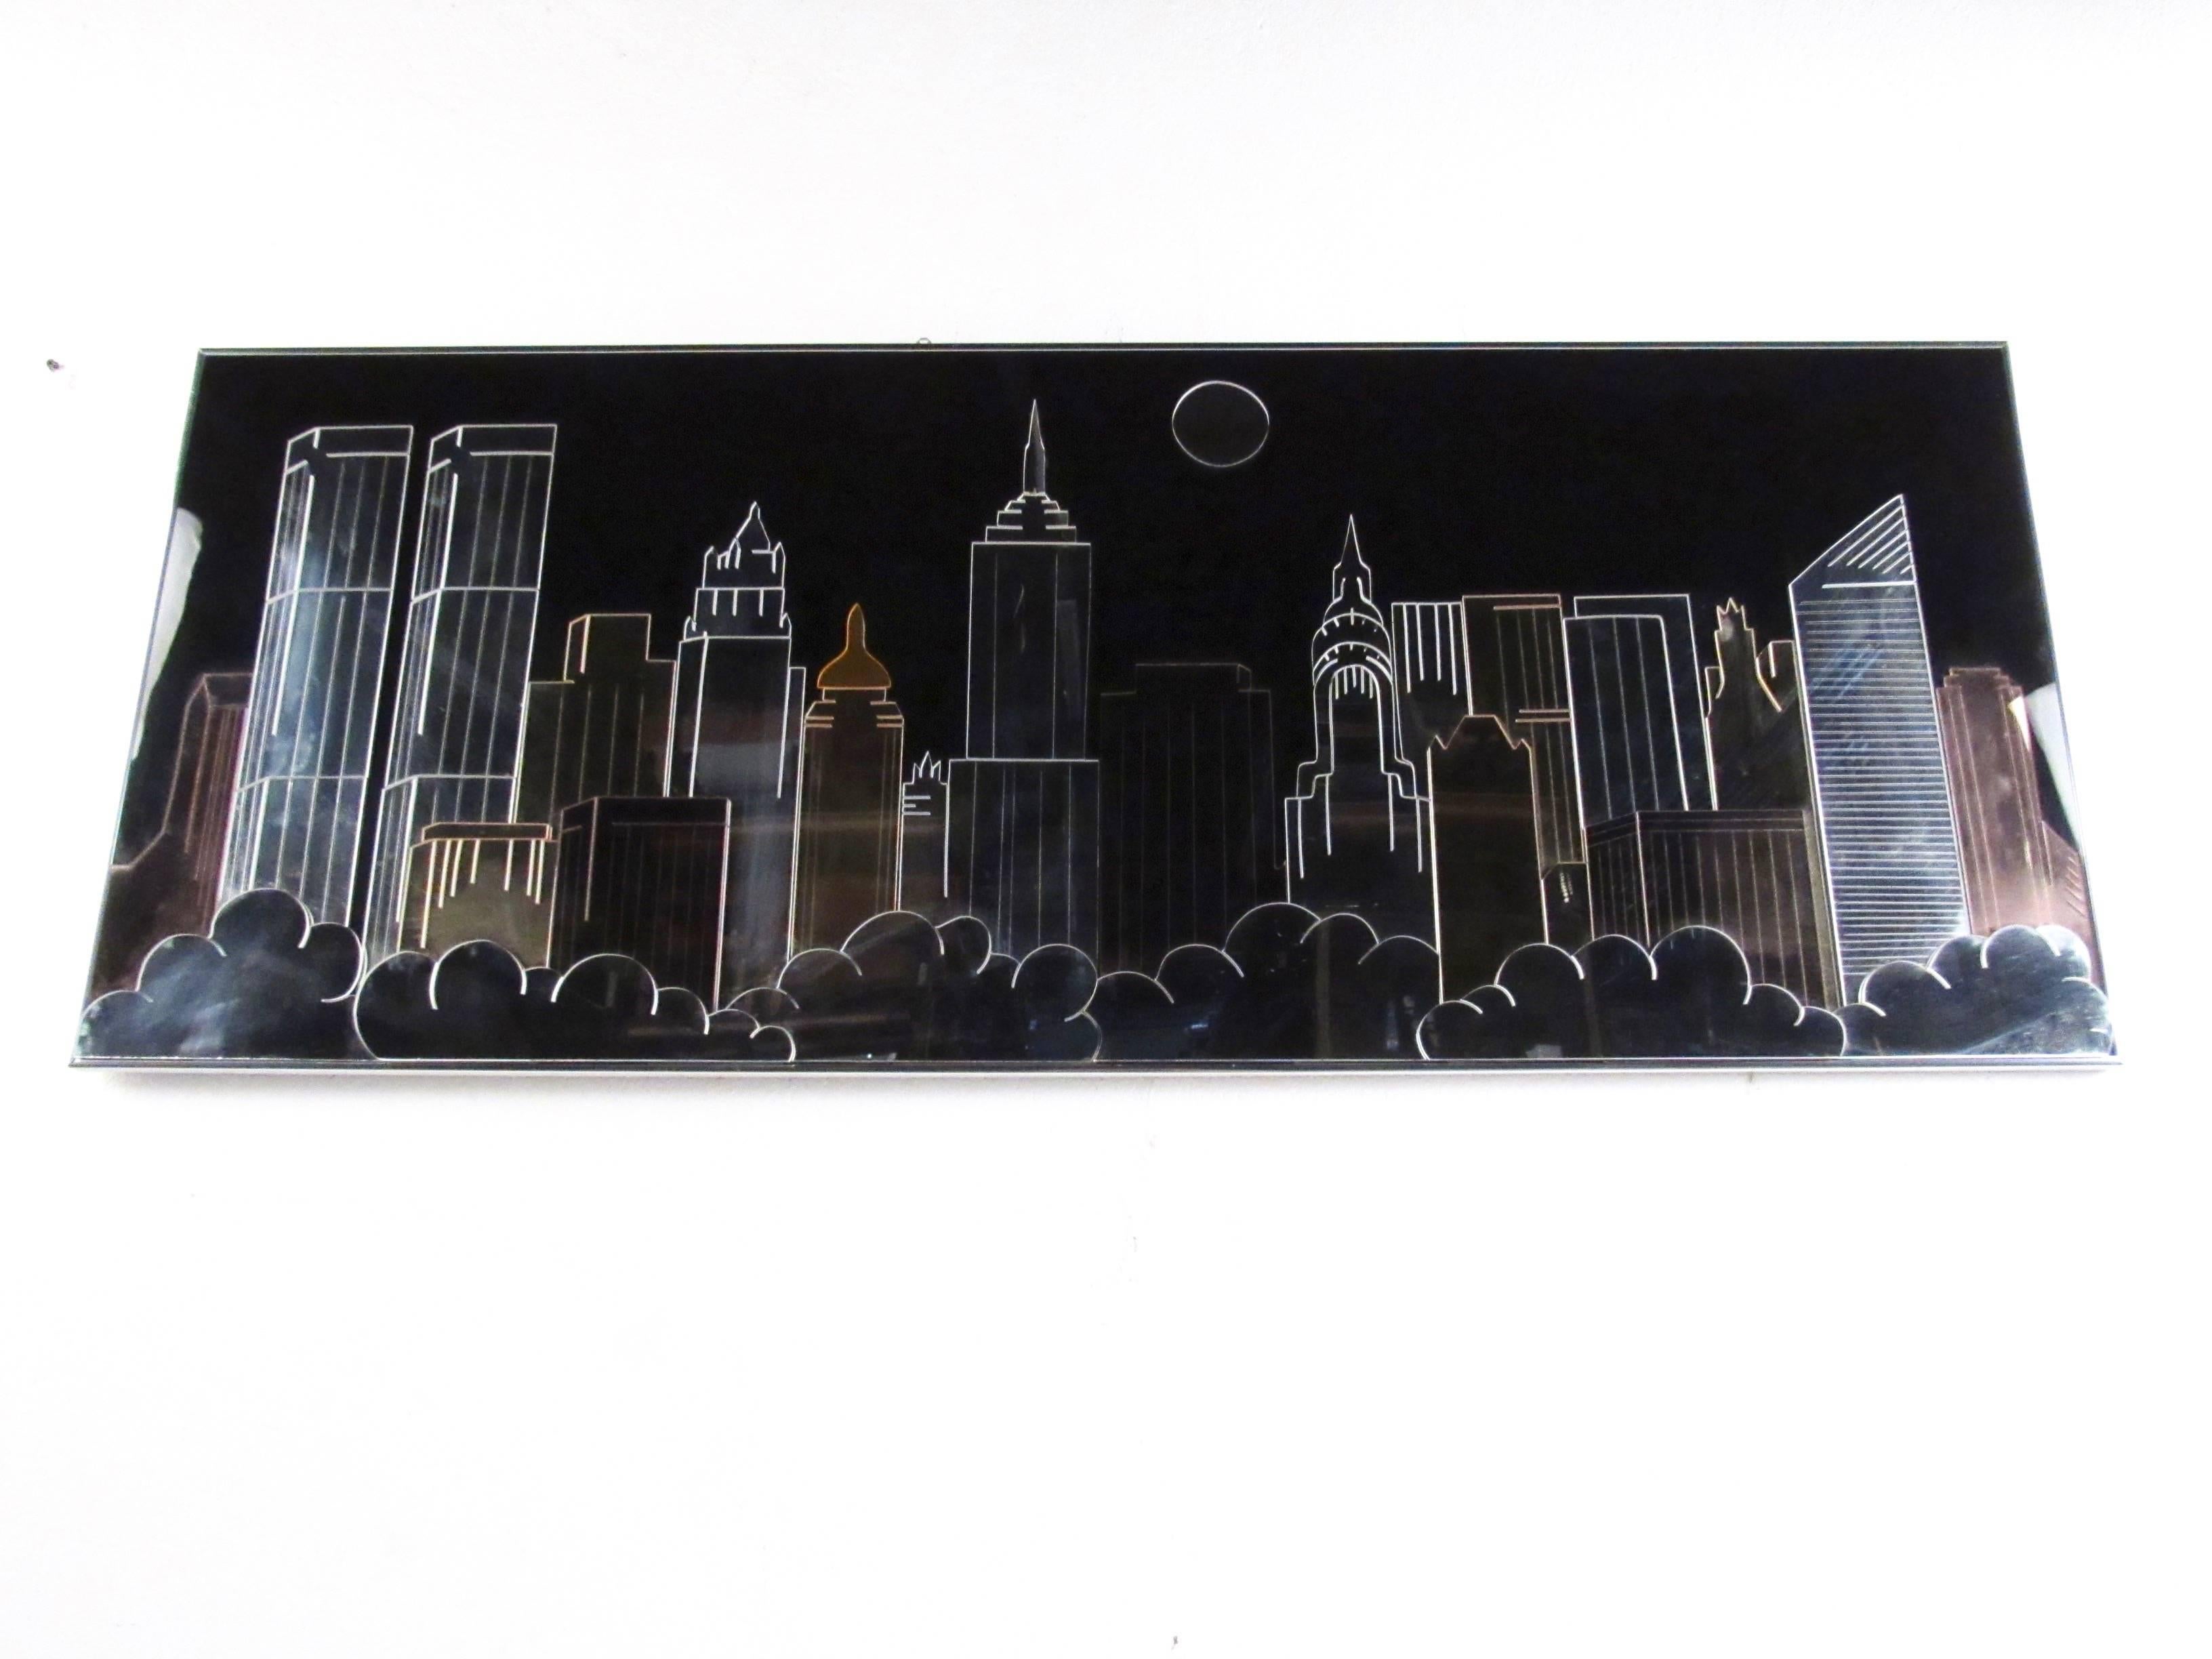 Dieses stilvolle moderne Wandkunstwerk im Vintage-Stil besteht aus einer Mischung aus Metall, Acryl und Spiegeln, die eine Skyline von New York City mit Zwillingstürmen, Empire State Building und vielem mehr darstellt. Die moderne, zeitgemäße